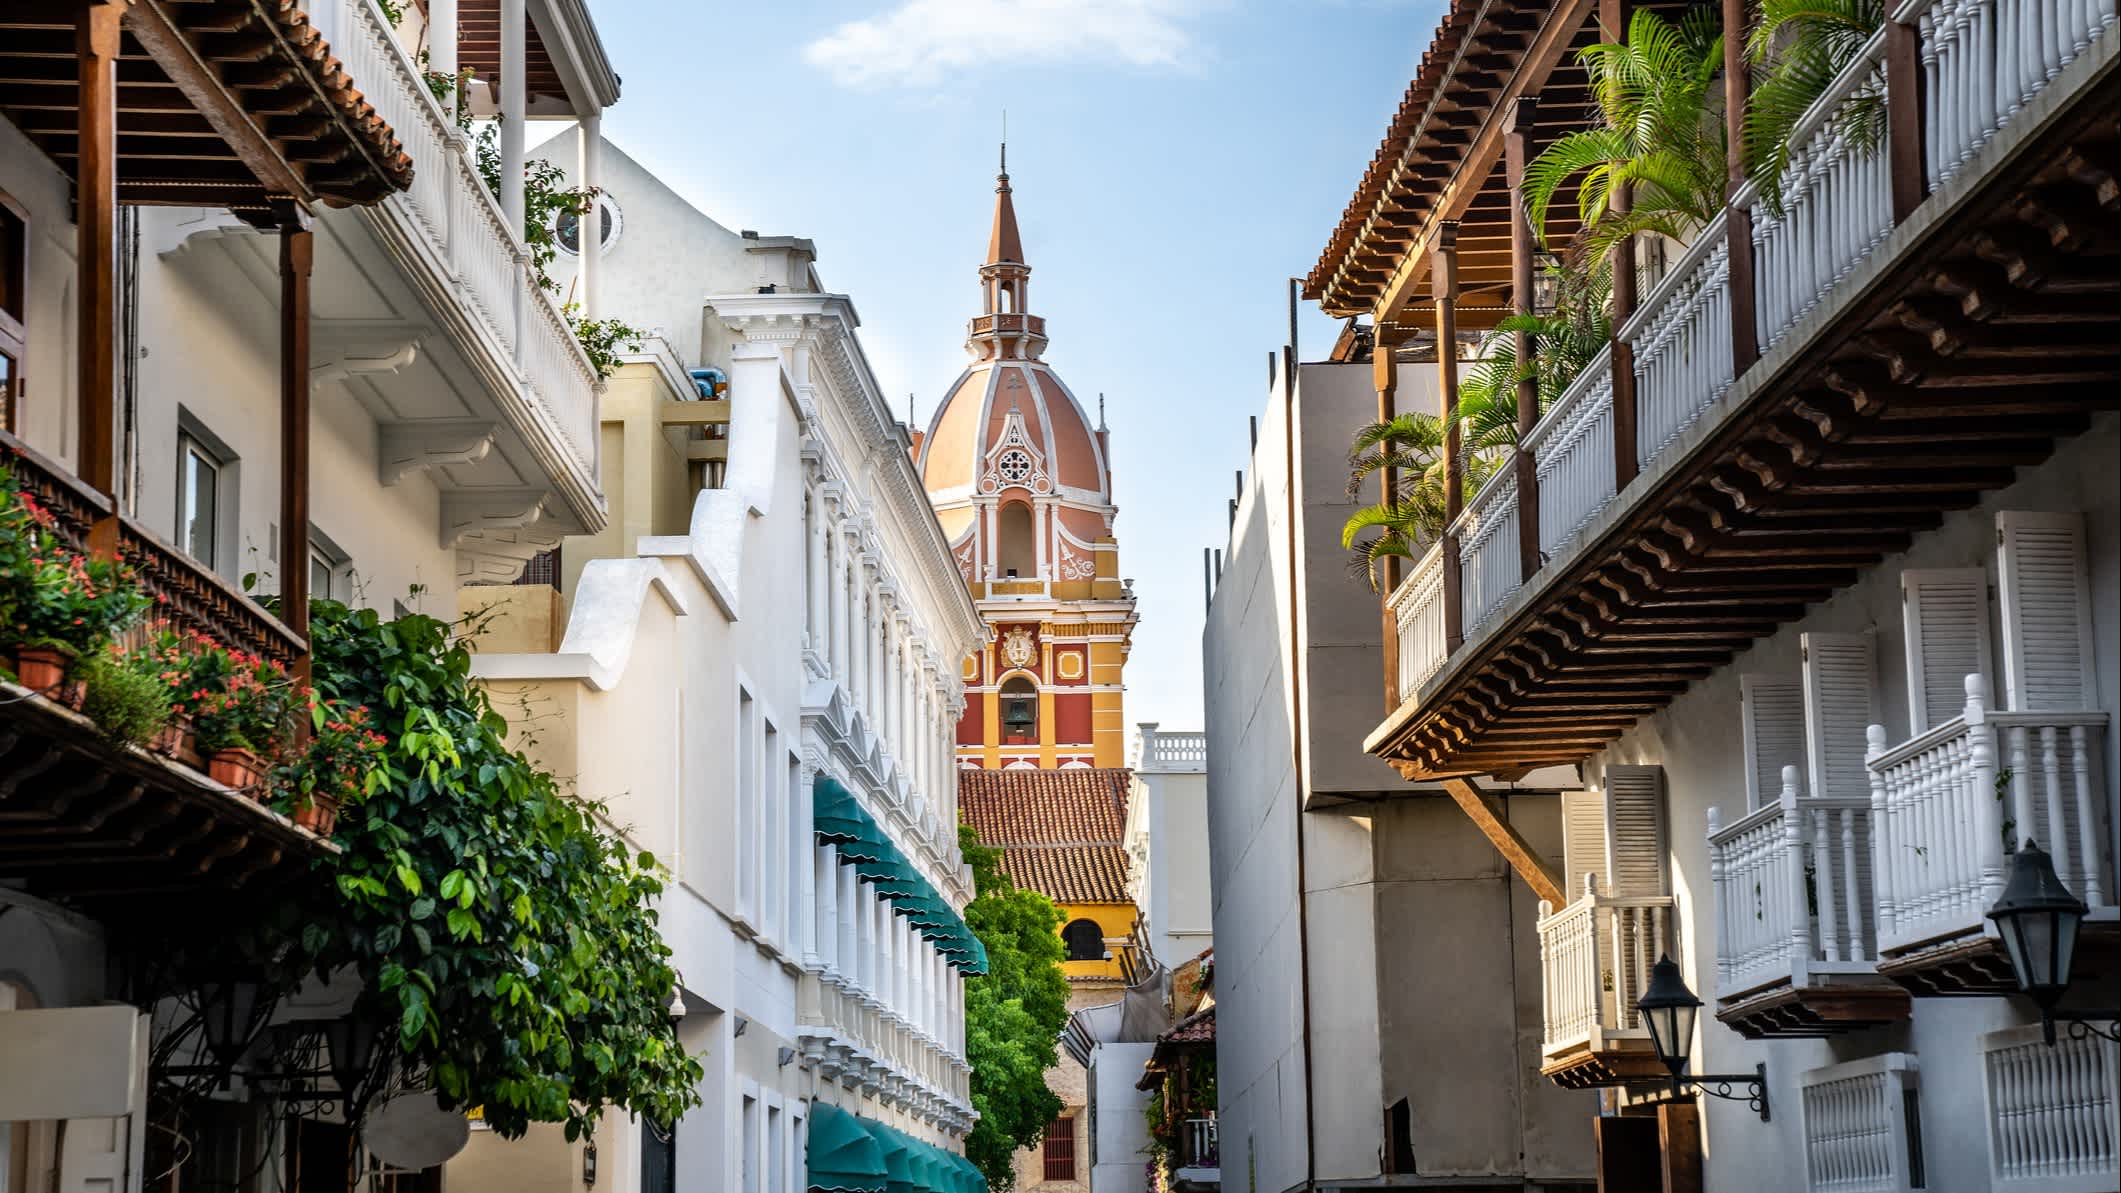 Blick auf Balkone, die zur beeindruckenden Kathedrale in Cartagena führen